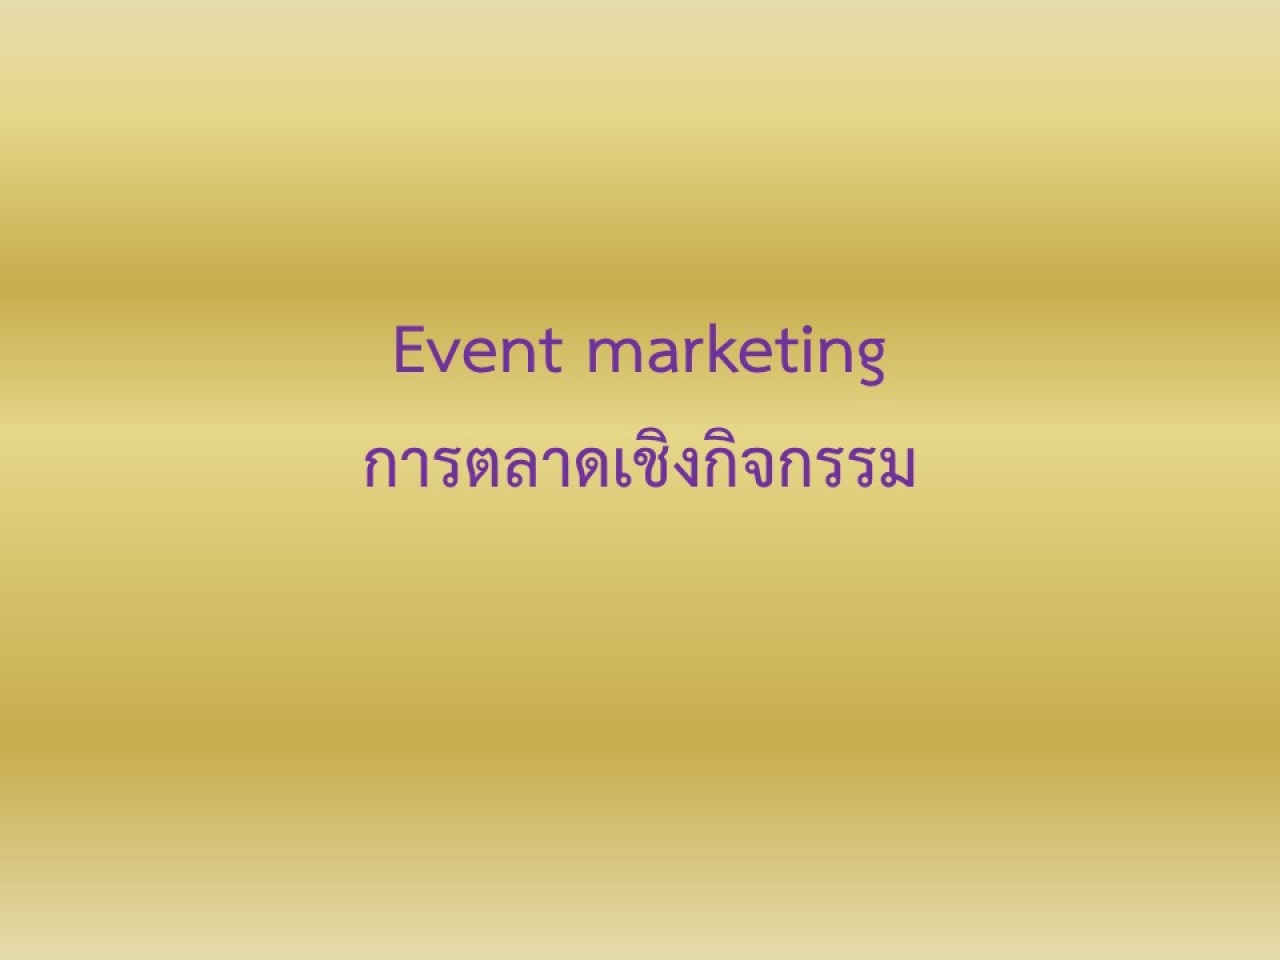 การตลาดเชิงกิจกรรม  -  Event Marketing